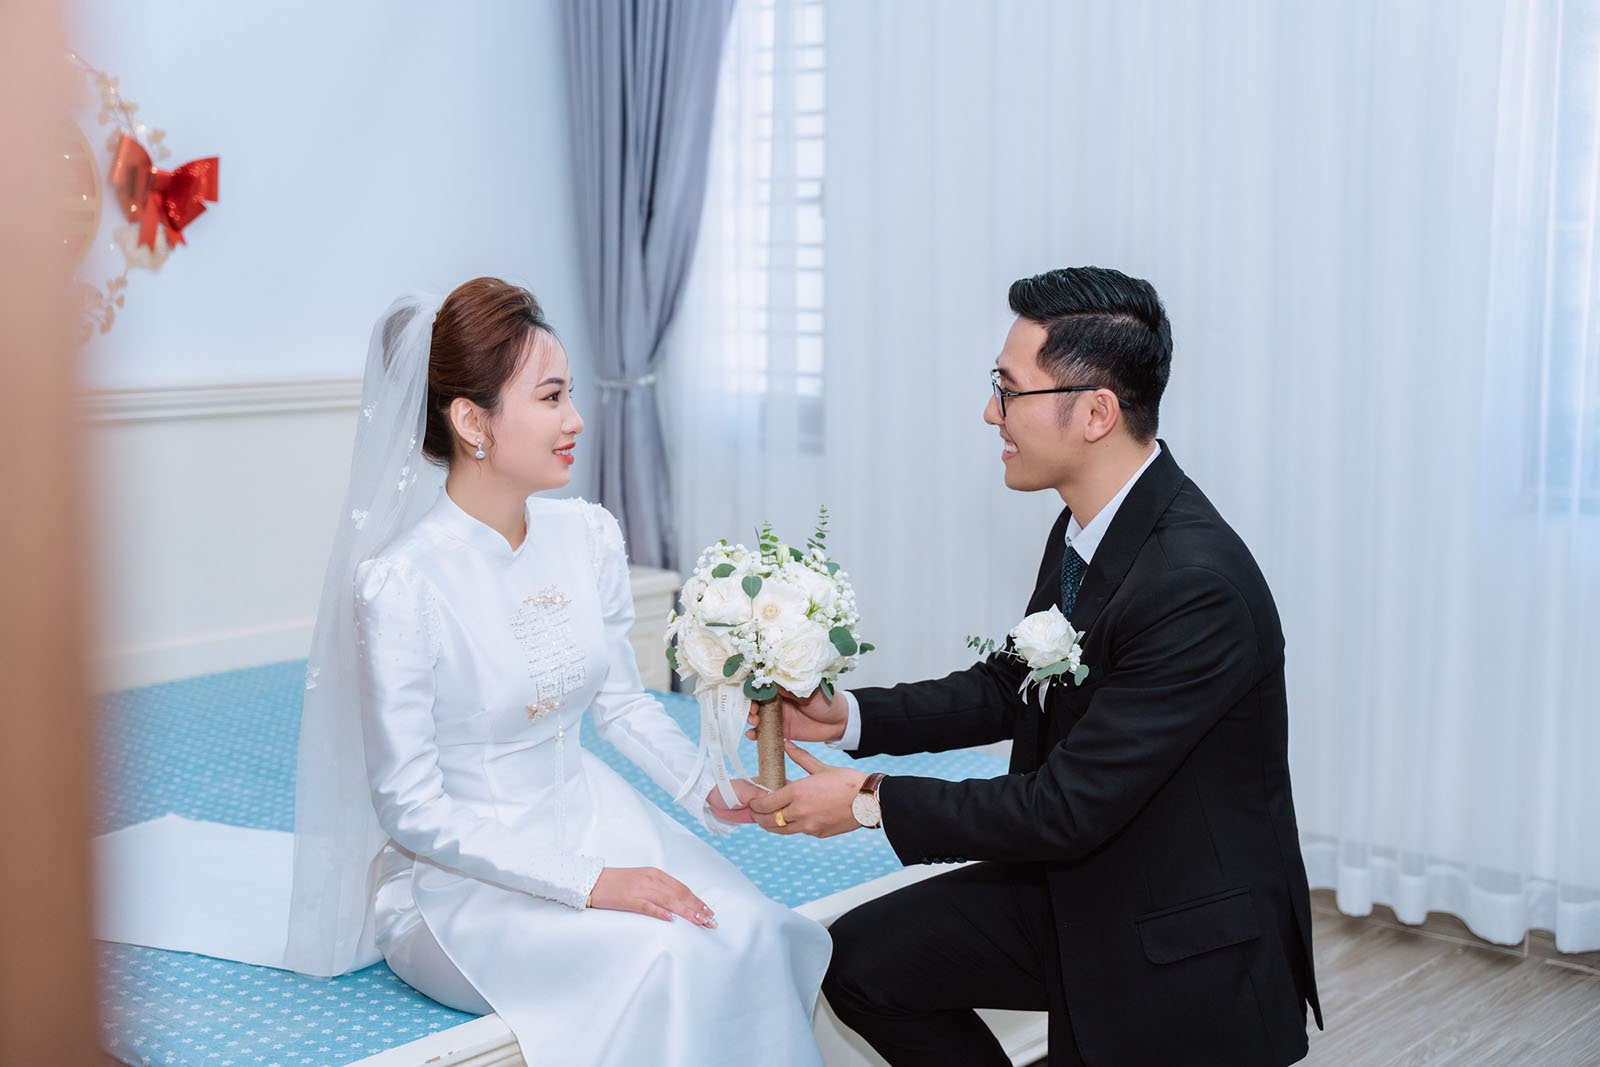 Dịch vụ may áo dài cưới thiết kế riêng cho cô dâu ngày trọng đại